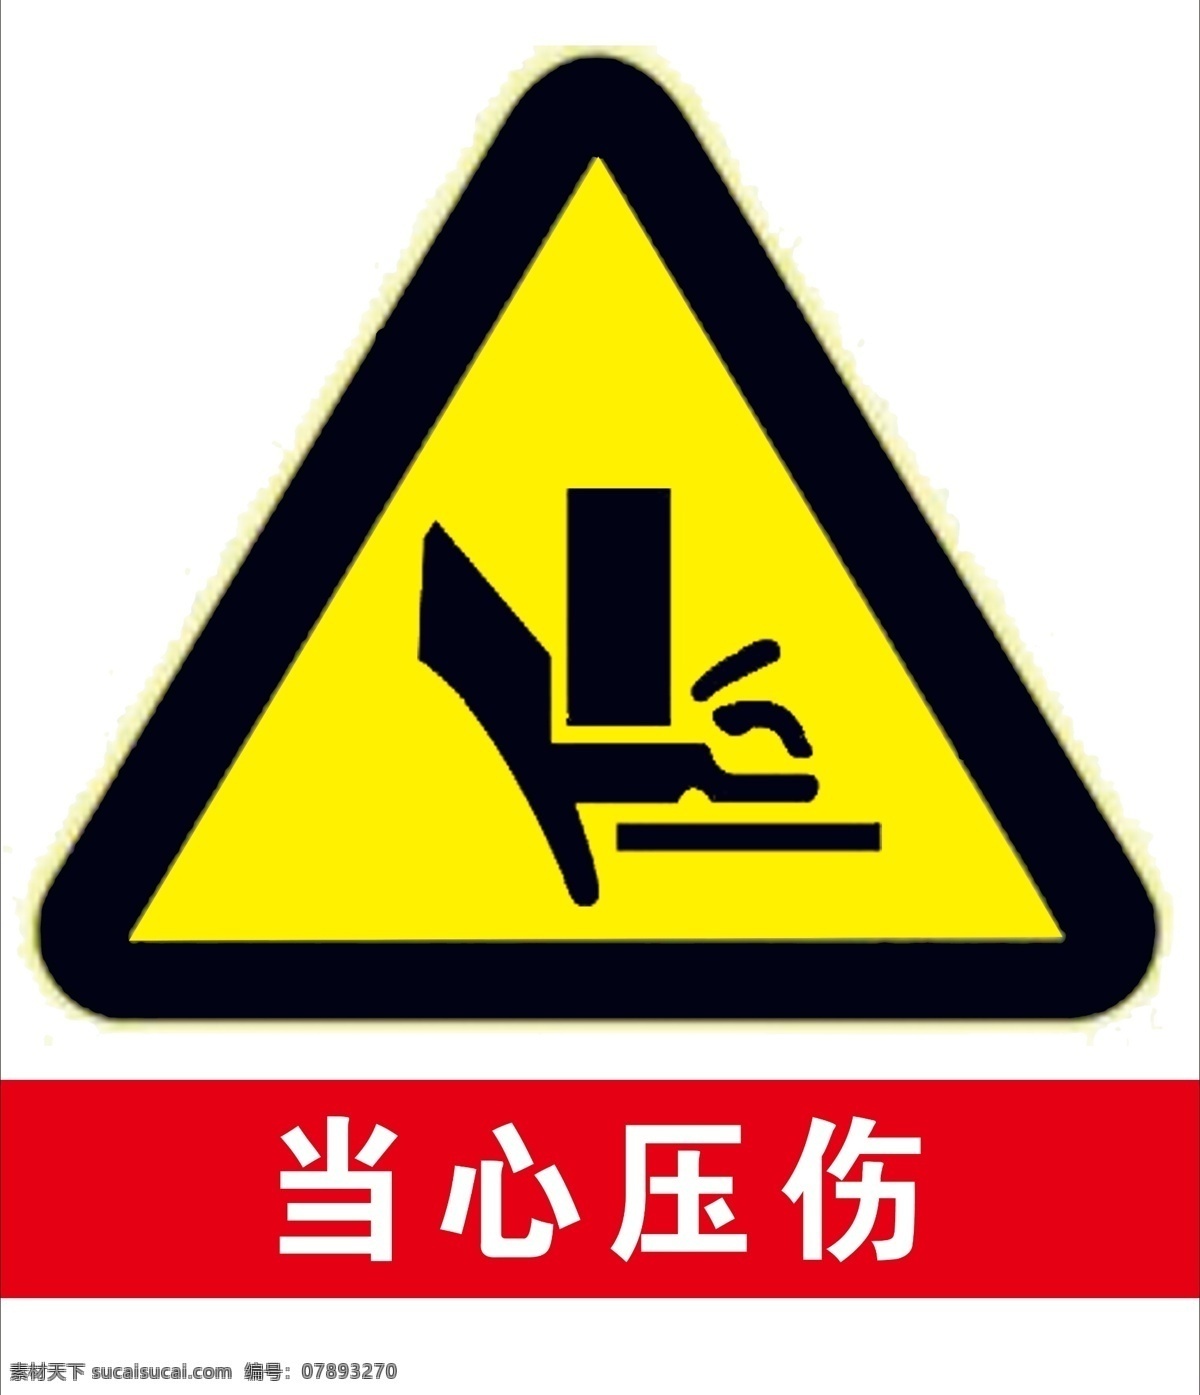 当心 压 伤 黄色 警告 标志 标示 当心压伤警告 黄色警告标志 黄色警告标示 当心机器压伤 安全标志标示 生活百科 生活用品